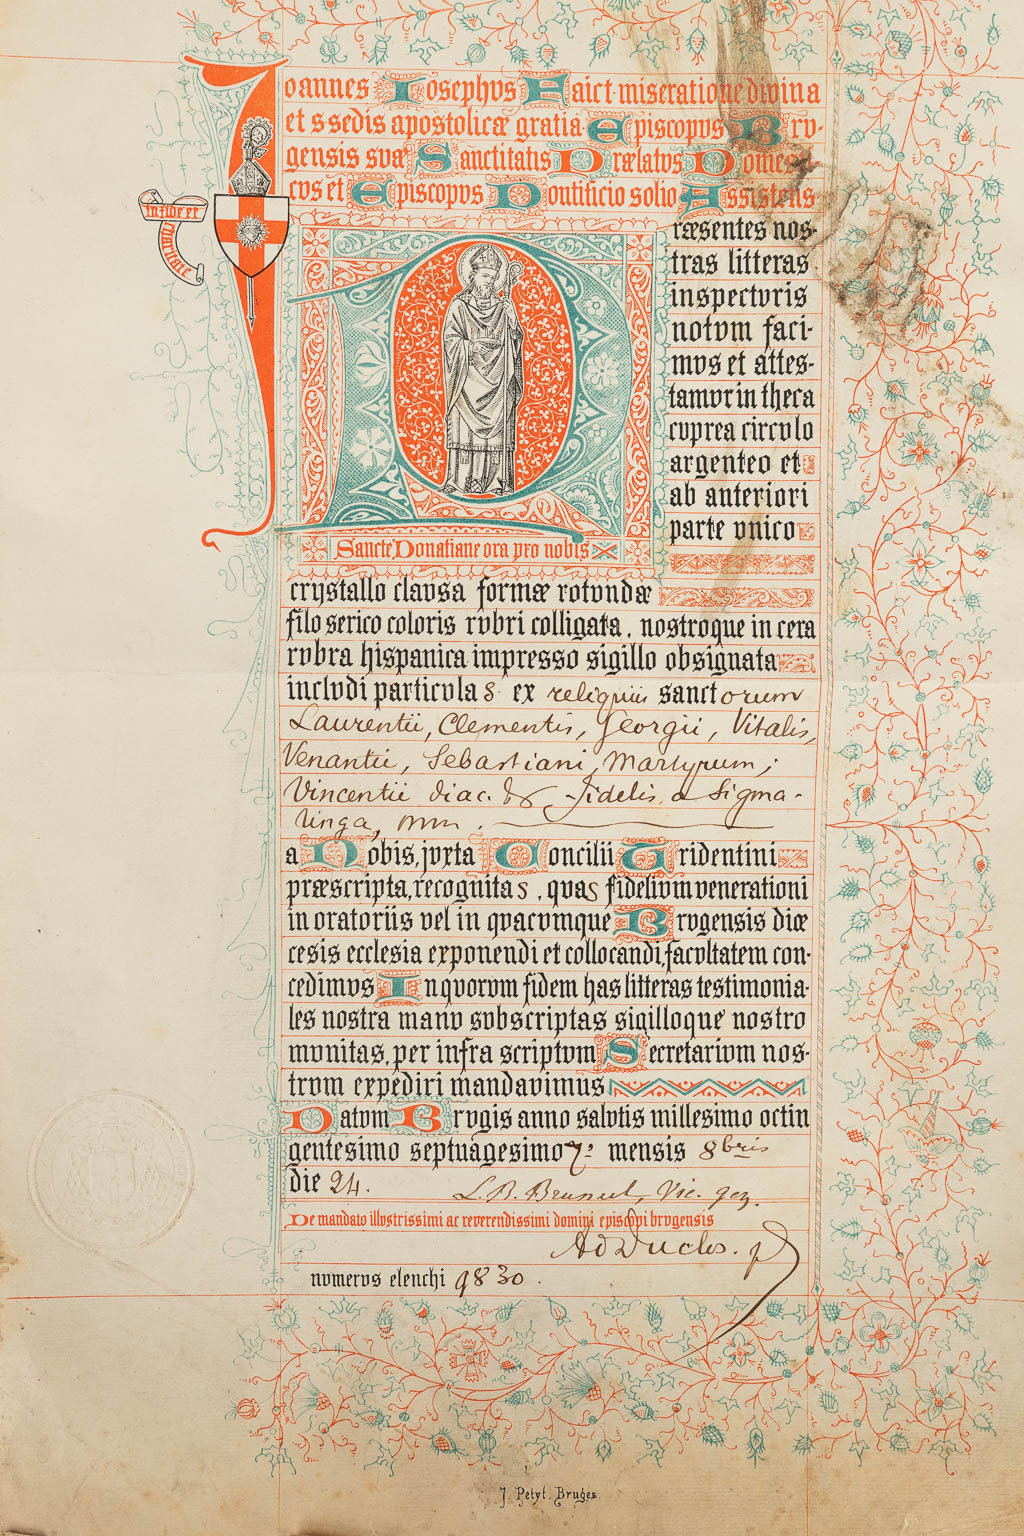 A sealed theca with a relic: Ex reliquiis sanctorum Laurentii, Clementis, Georgii, Vitalis, Venantii, Sebastiani Martyrum, Vince